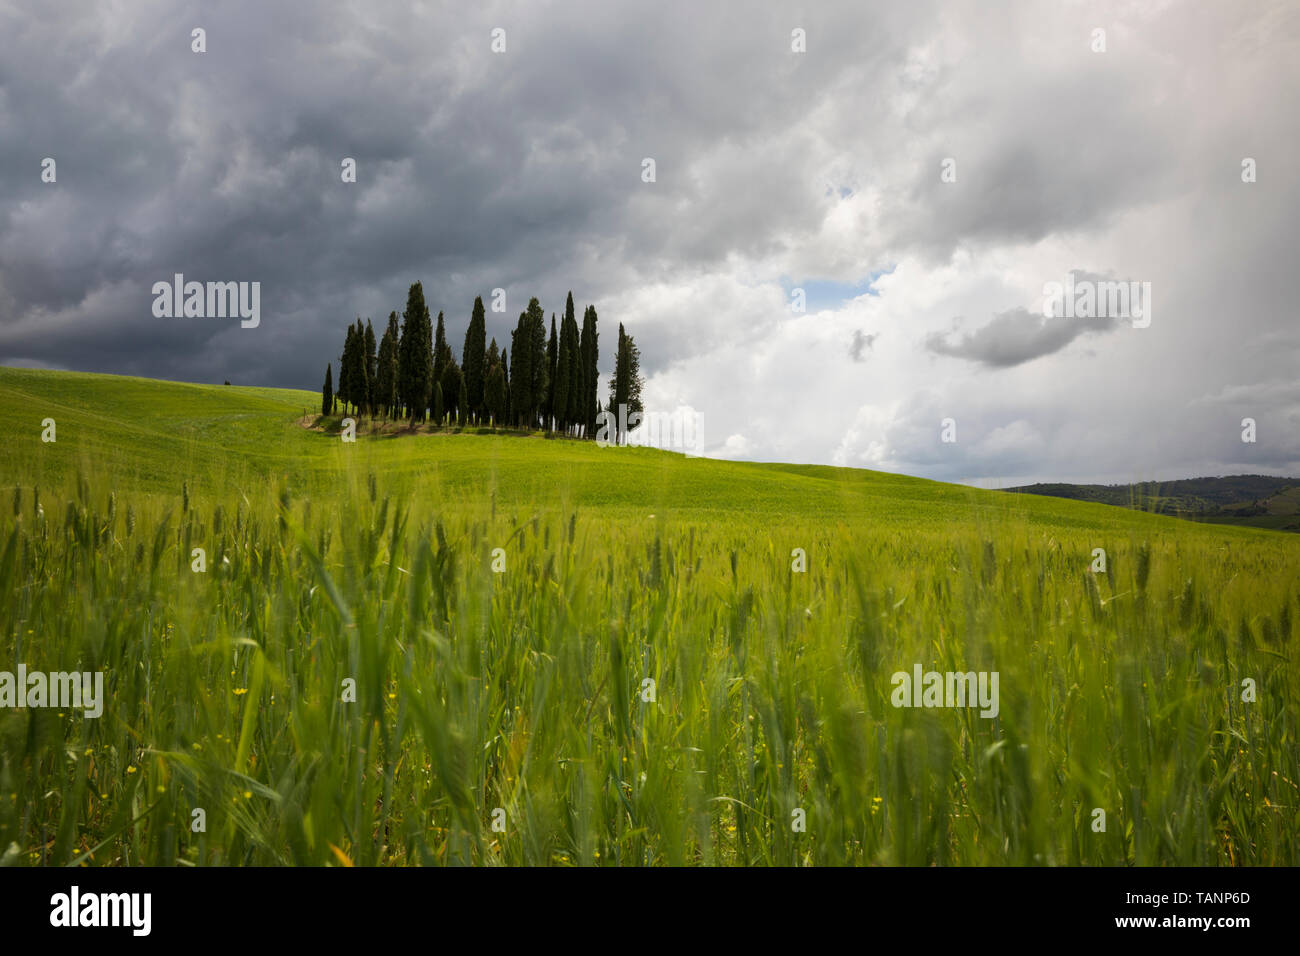 Büschel der Zypressen in der Gerste Feld unter einem stürmischen grauer Himmel, San Quirico d'Orcia Provinz Siena, Toskana, Italien, Europa Stockfoto